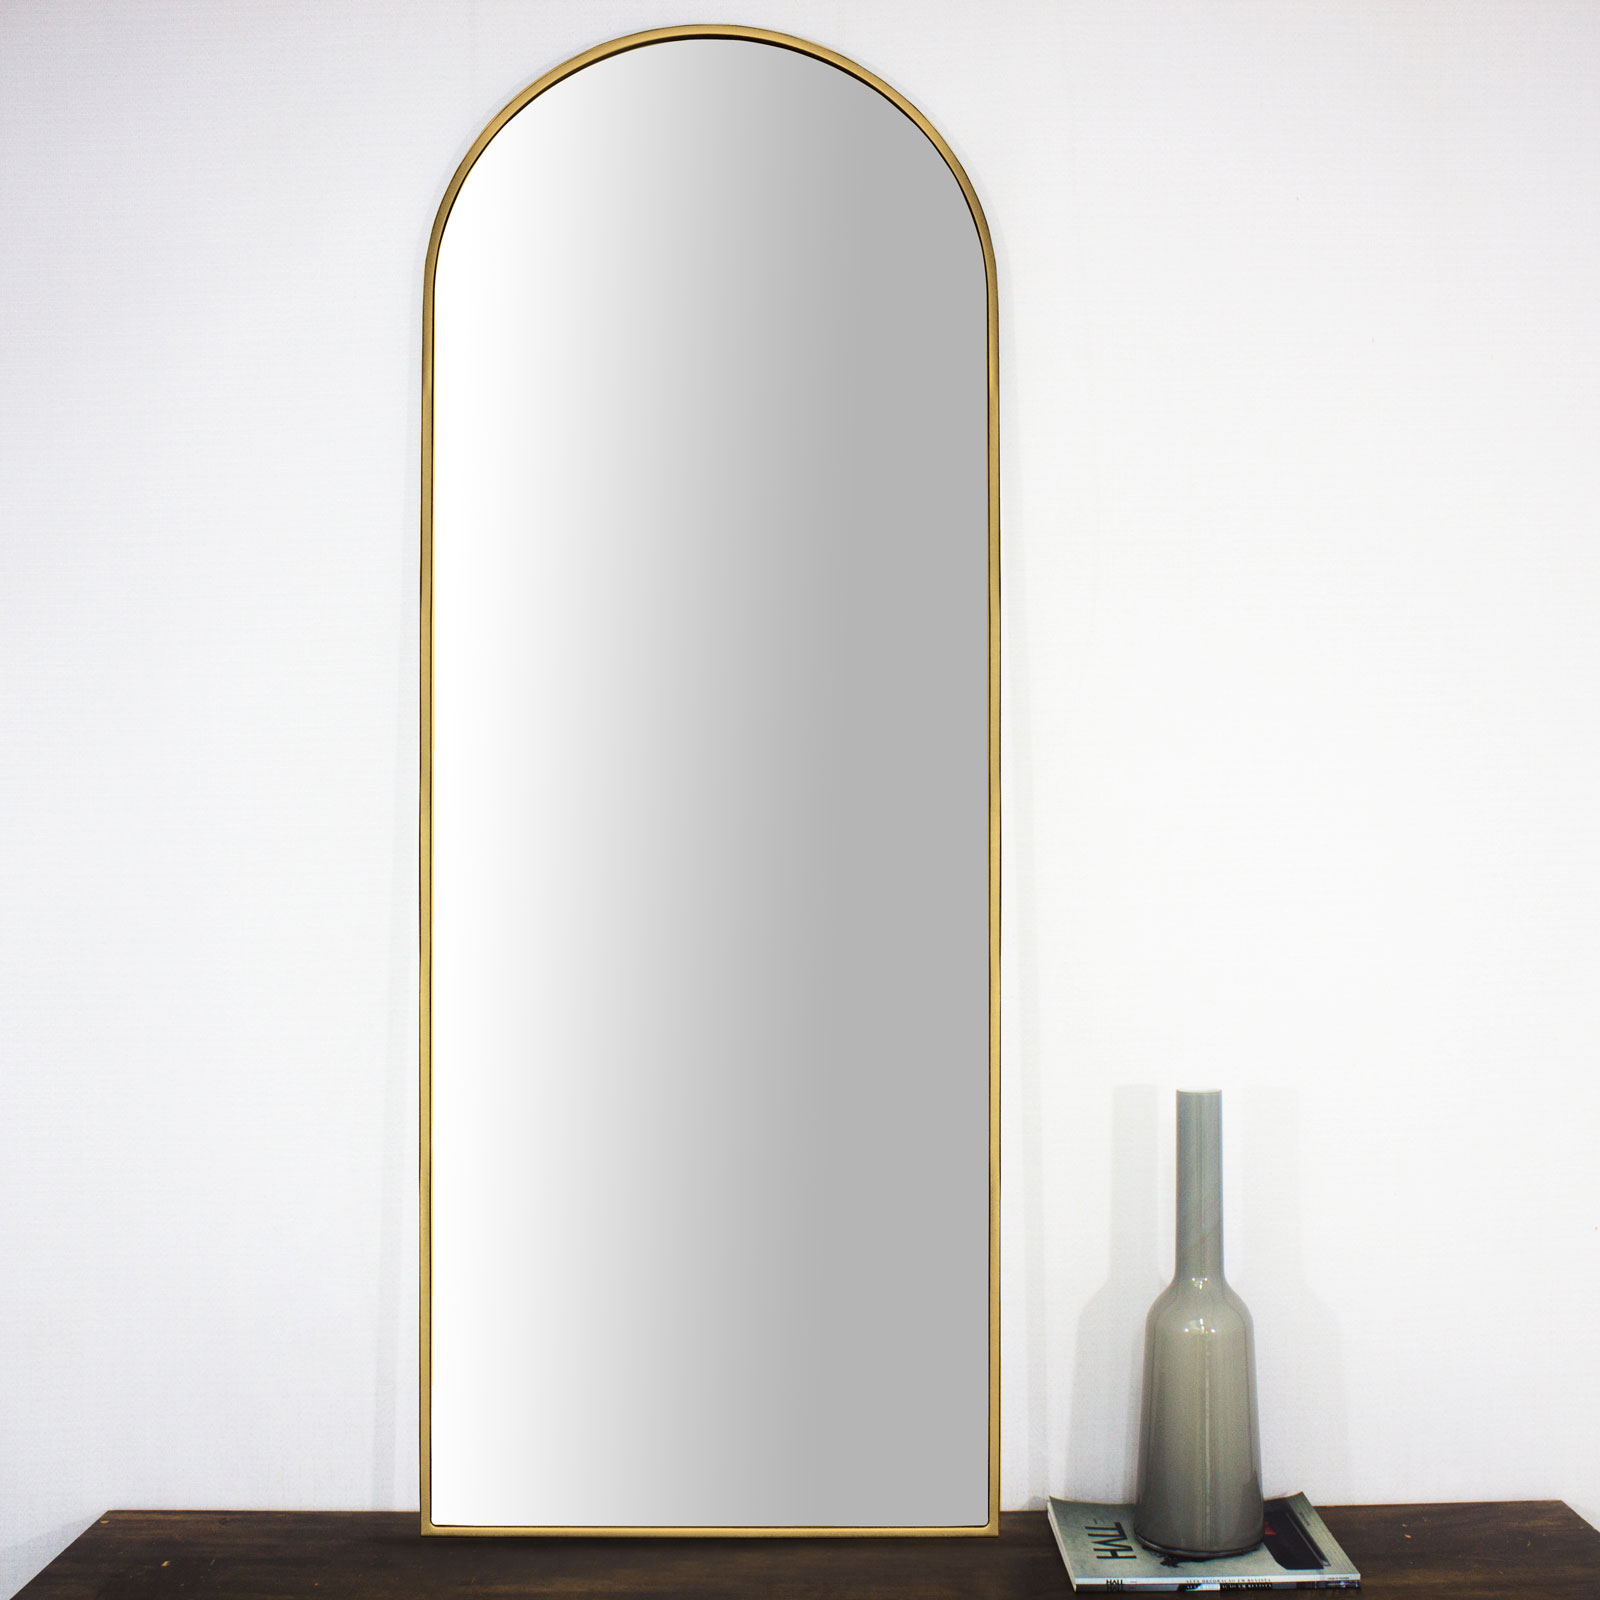 Moldura Semi Oval Janela Mdf Laqueada Dourada Brilho para Espelhos Vrias Medidas